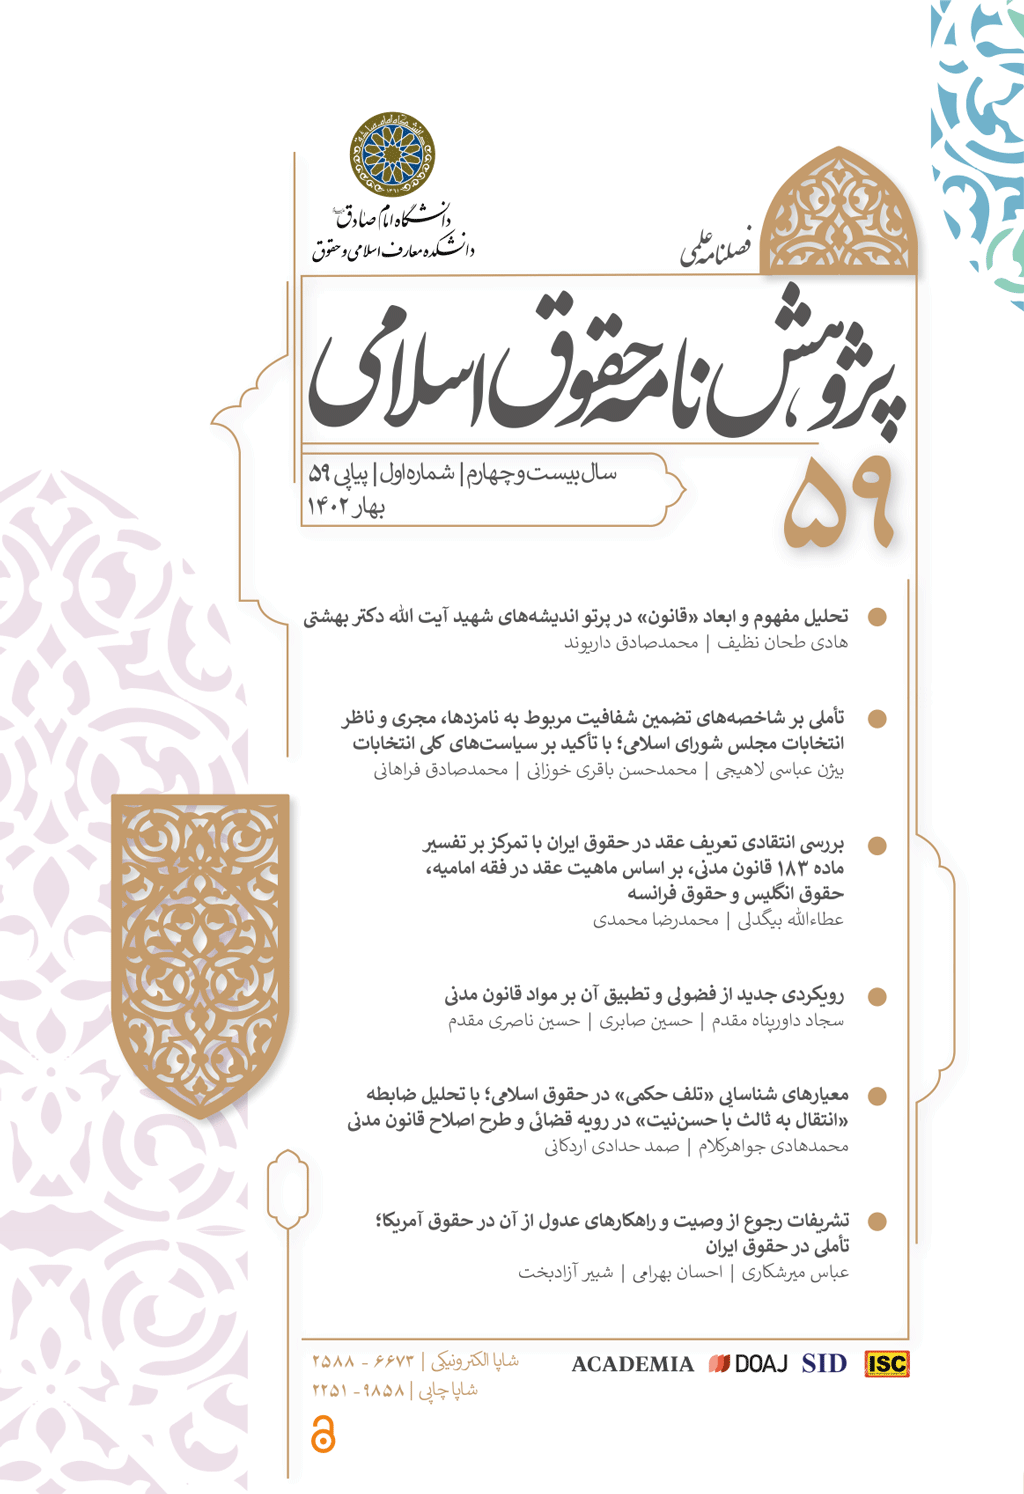 پژوهشنامه حقوق اسلامی - تابستان 1380 - شماره 3 و 4